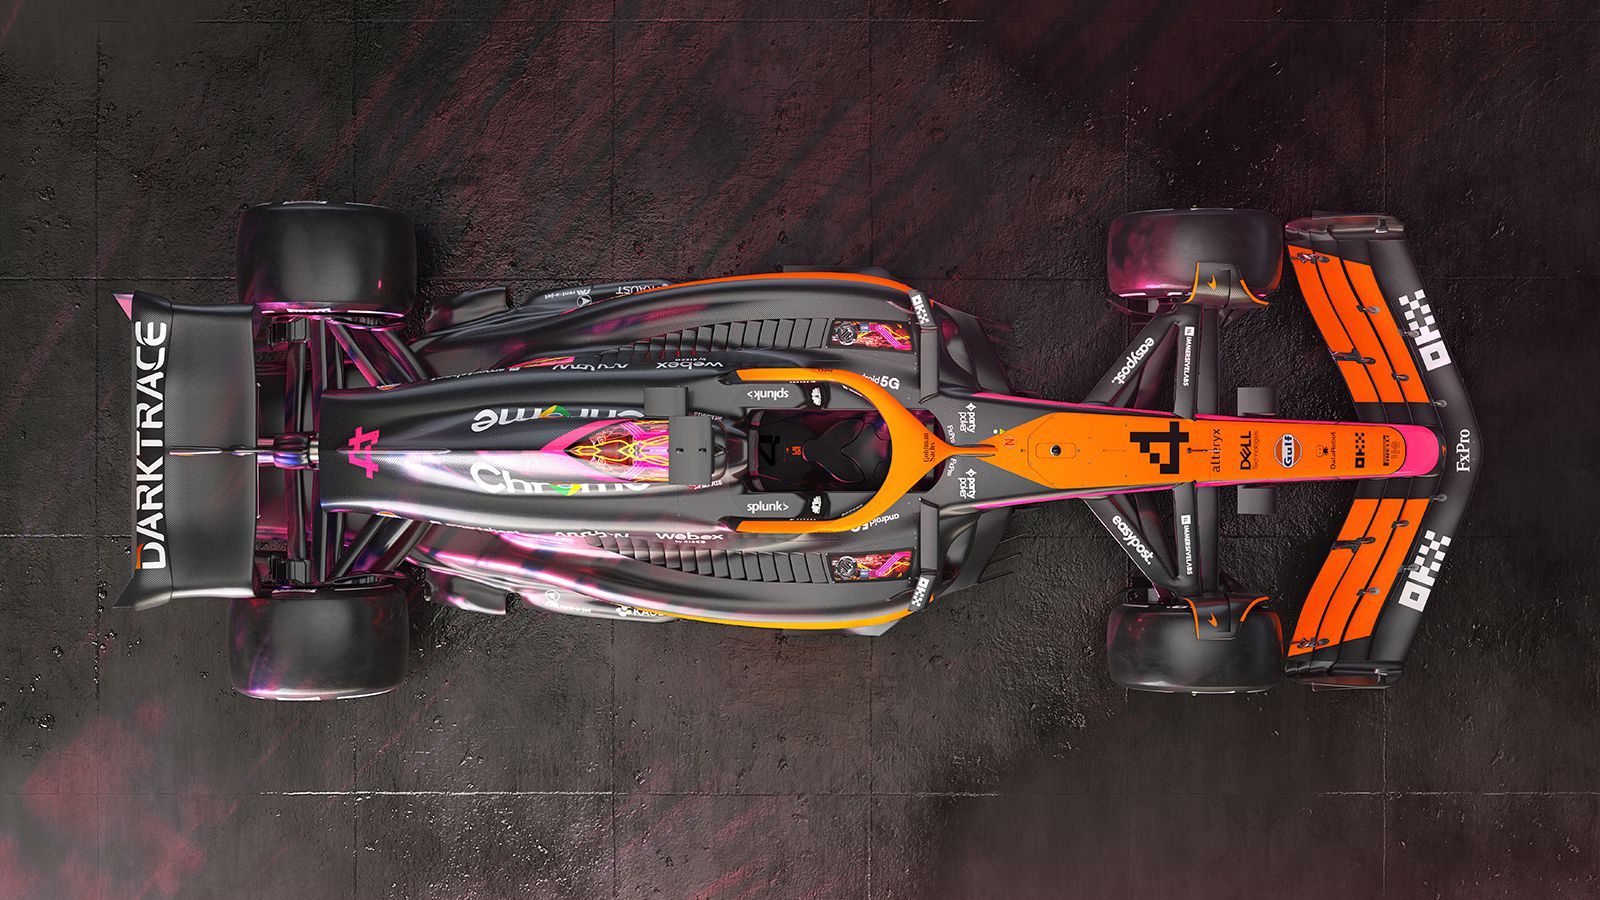 McLaren speical livery Singapore Grand Prix